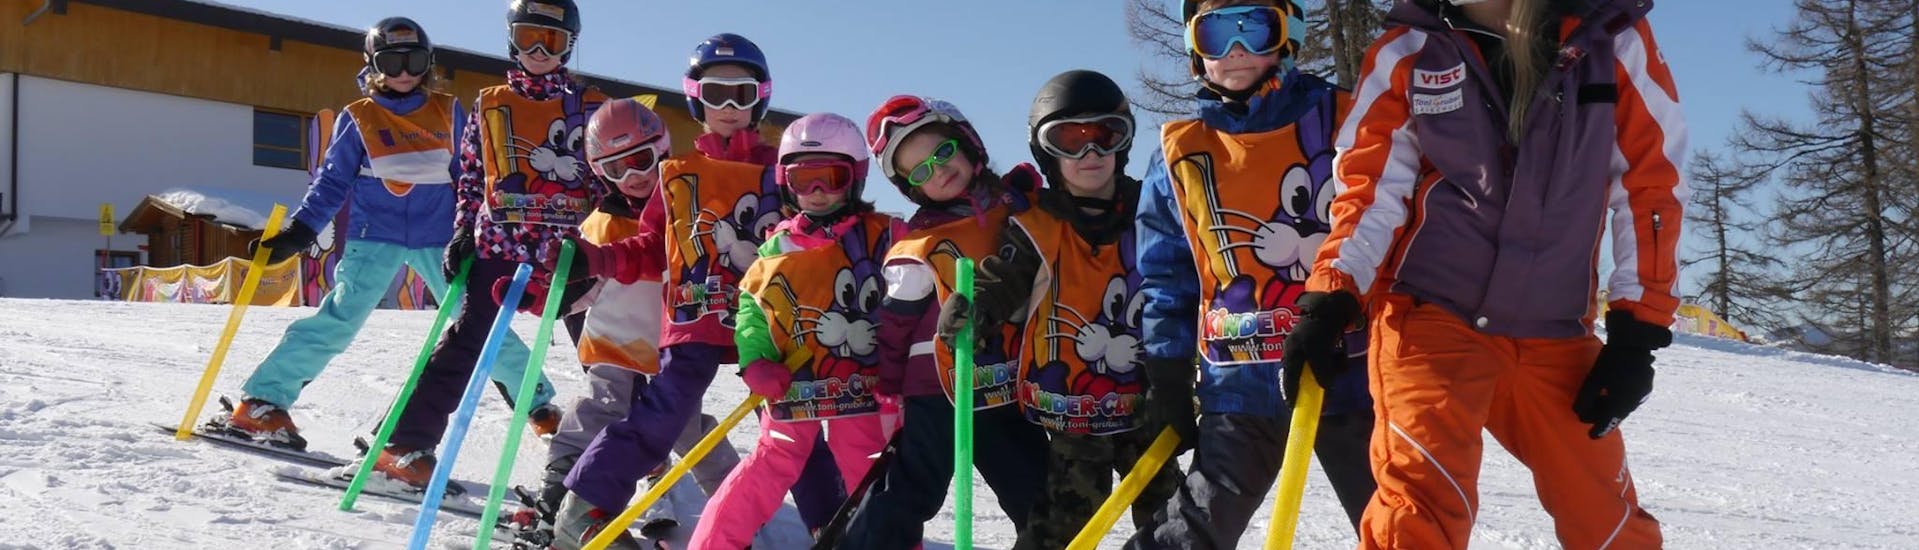 Clases de esquí para niños a partir de 4 años para todos los niveles con Skischule Toni Gruber.